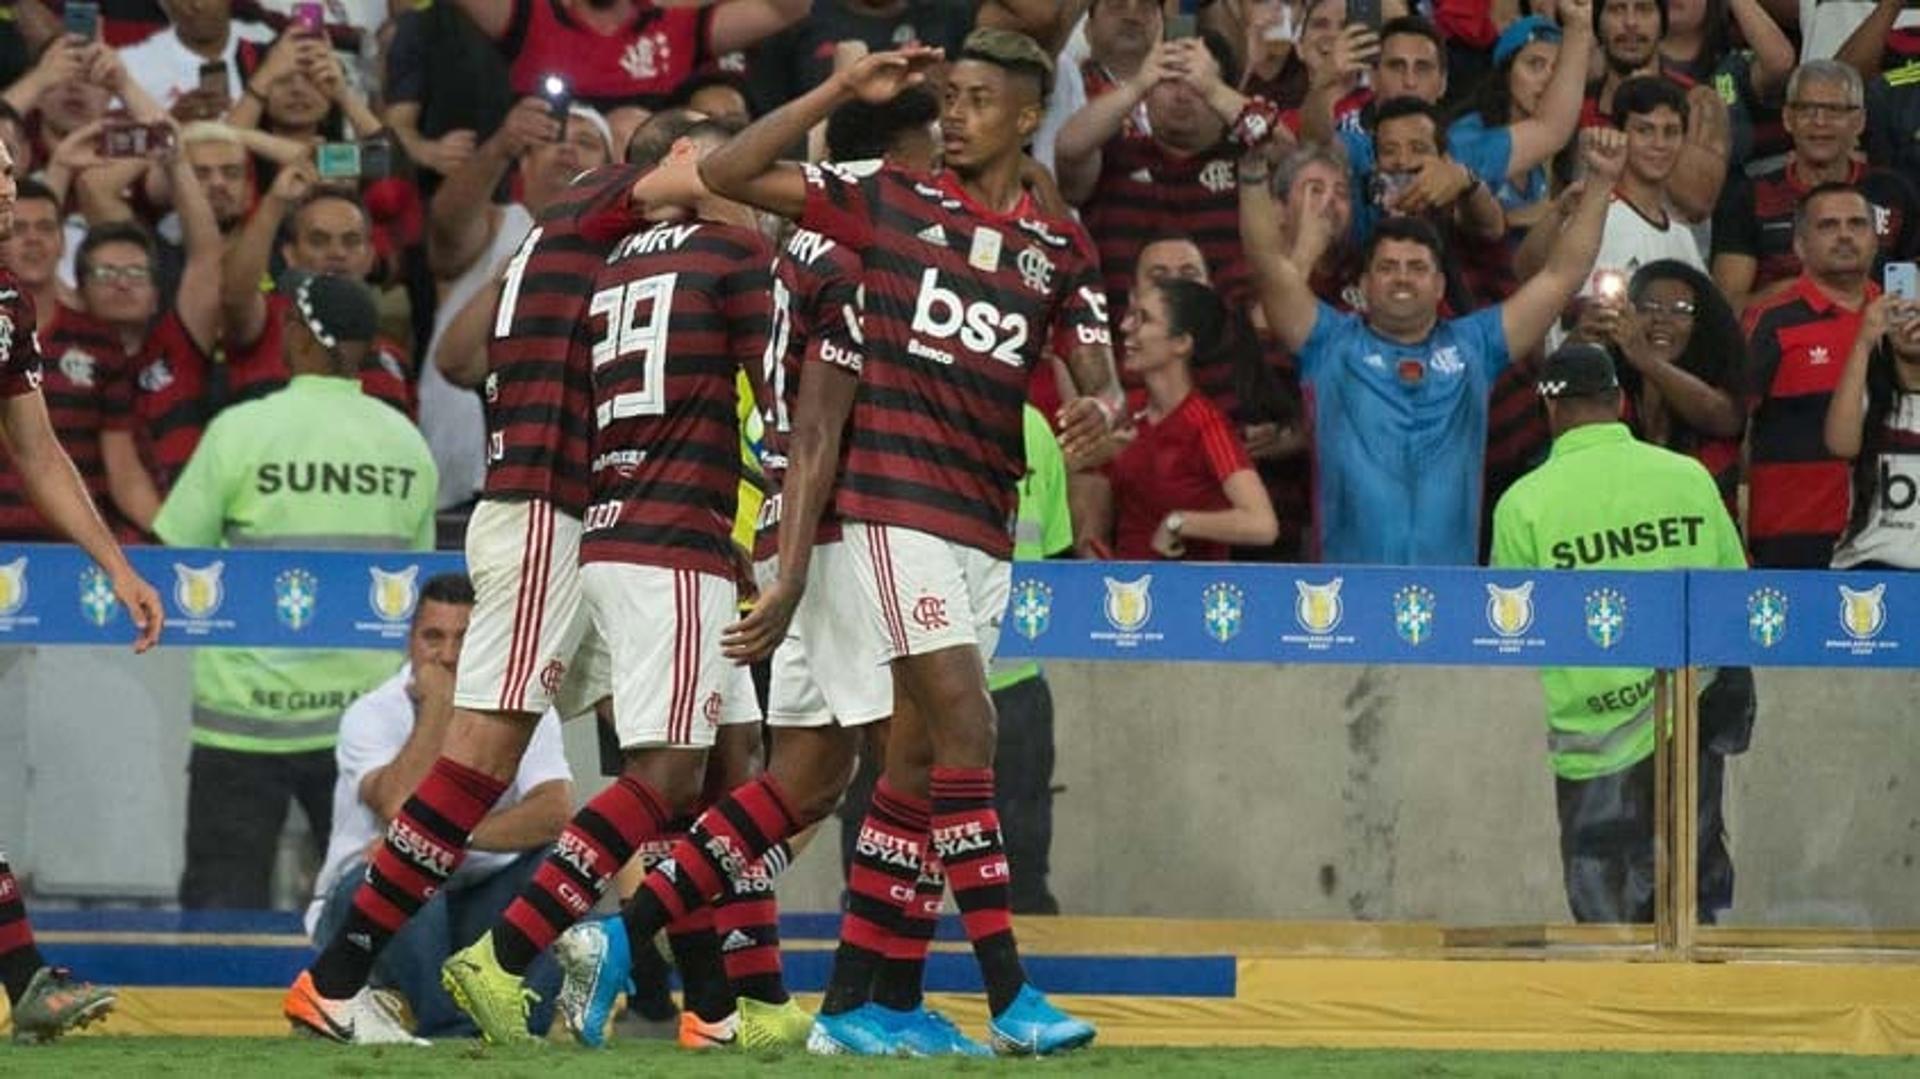 Confira a seguir a galeria especial do LANCE! com as imagens da vitória do Flamengo sobre o Ceará nesta quarta